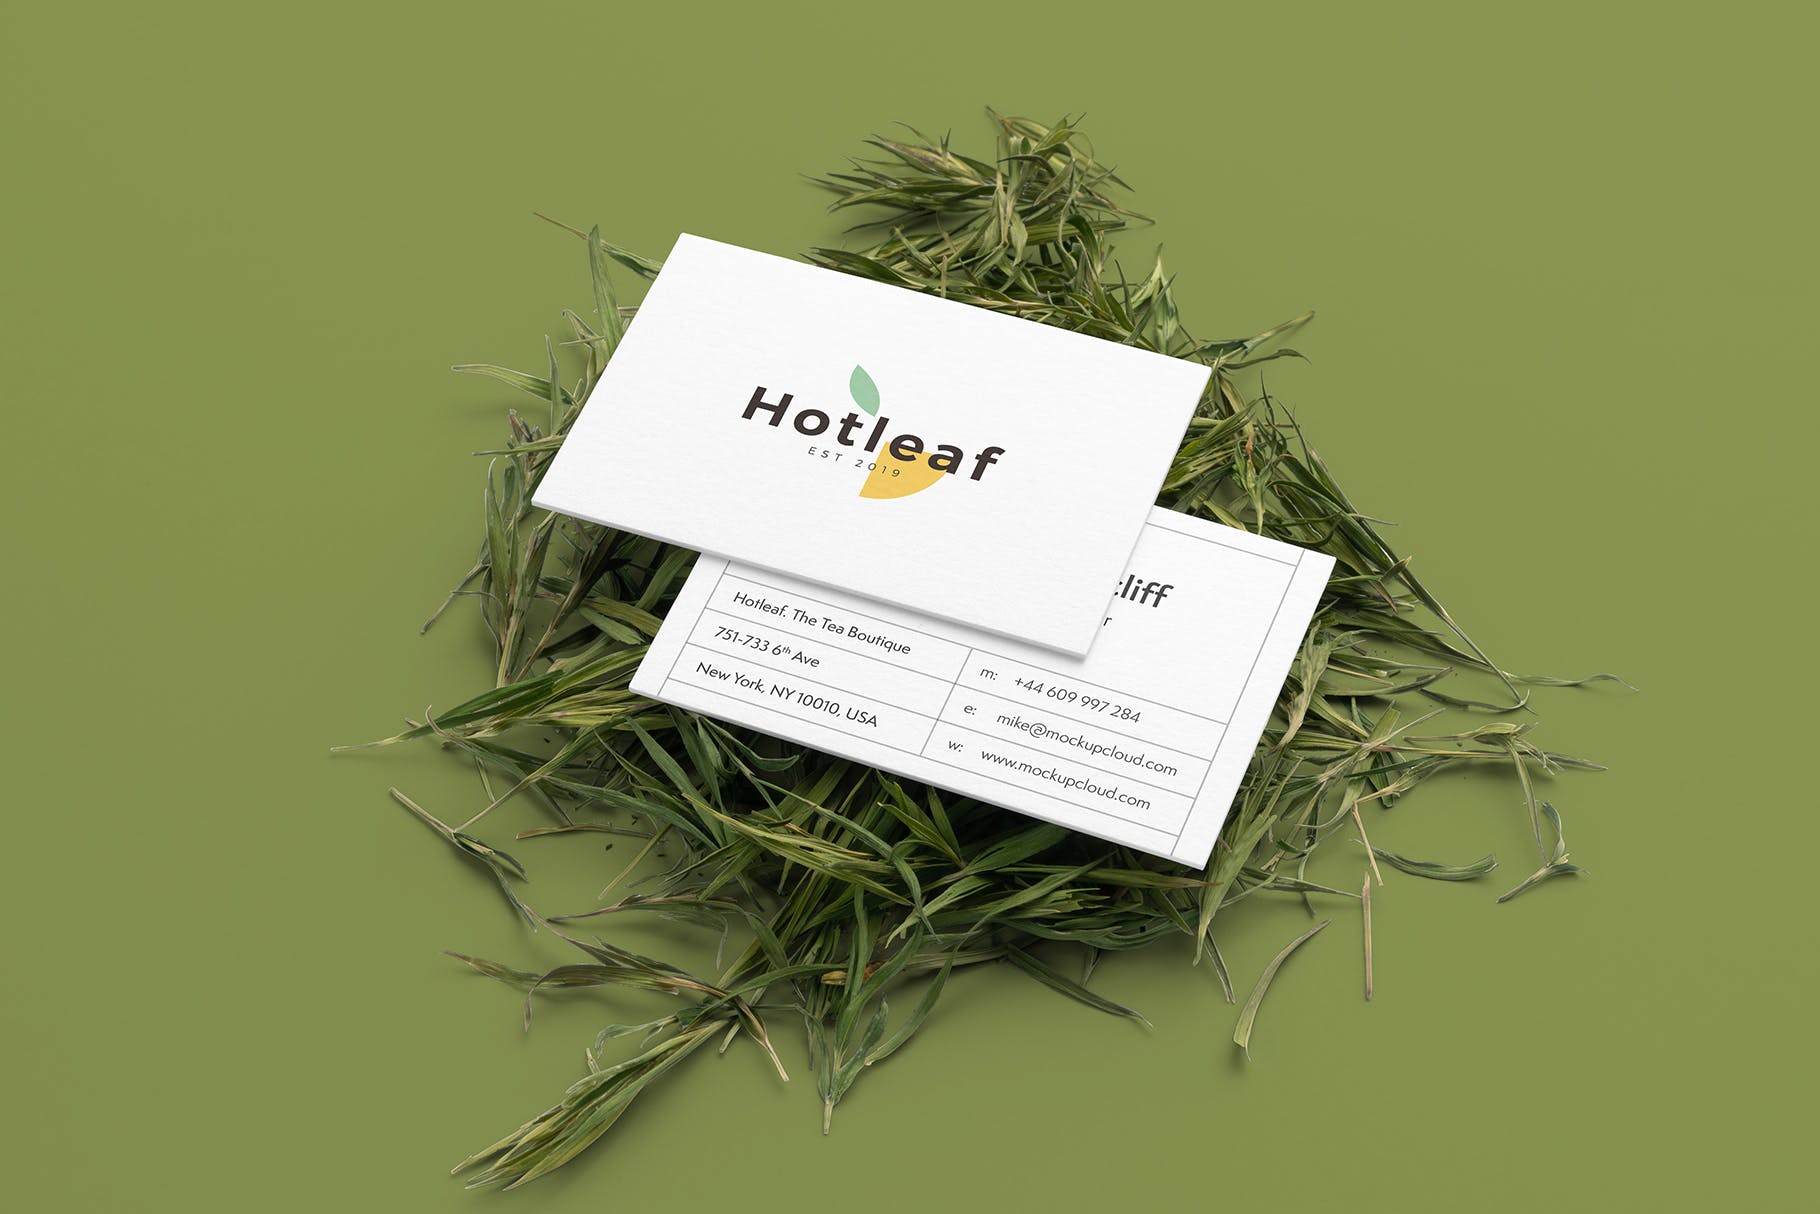 茶叶品牌VI视觉设计效果图样机模板v2 Hotleaf – Teahouse Branding Mockups Vol 2设计素材模板